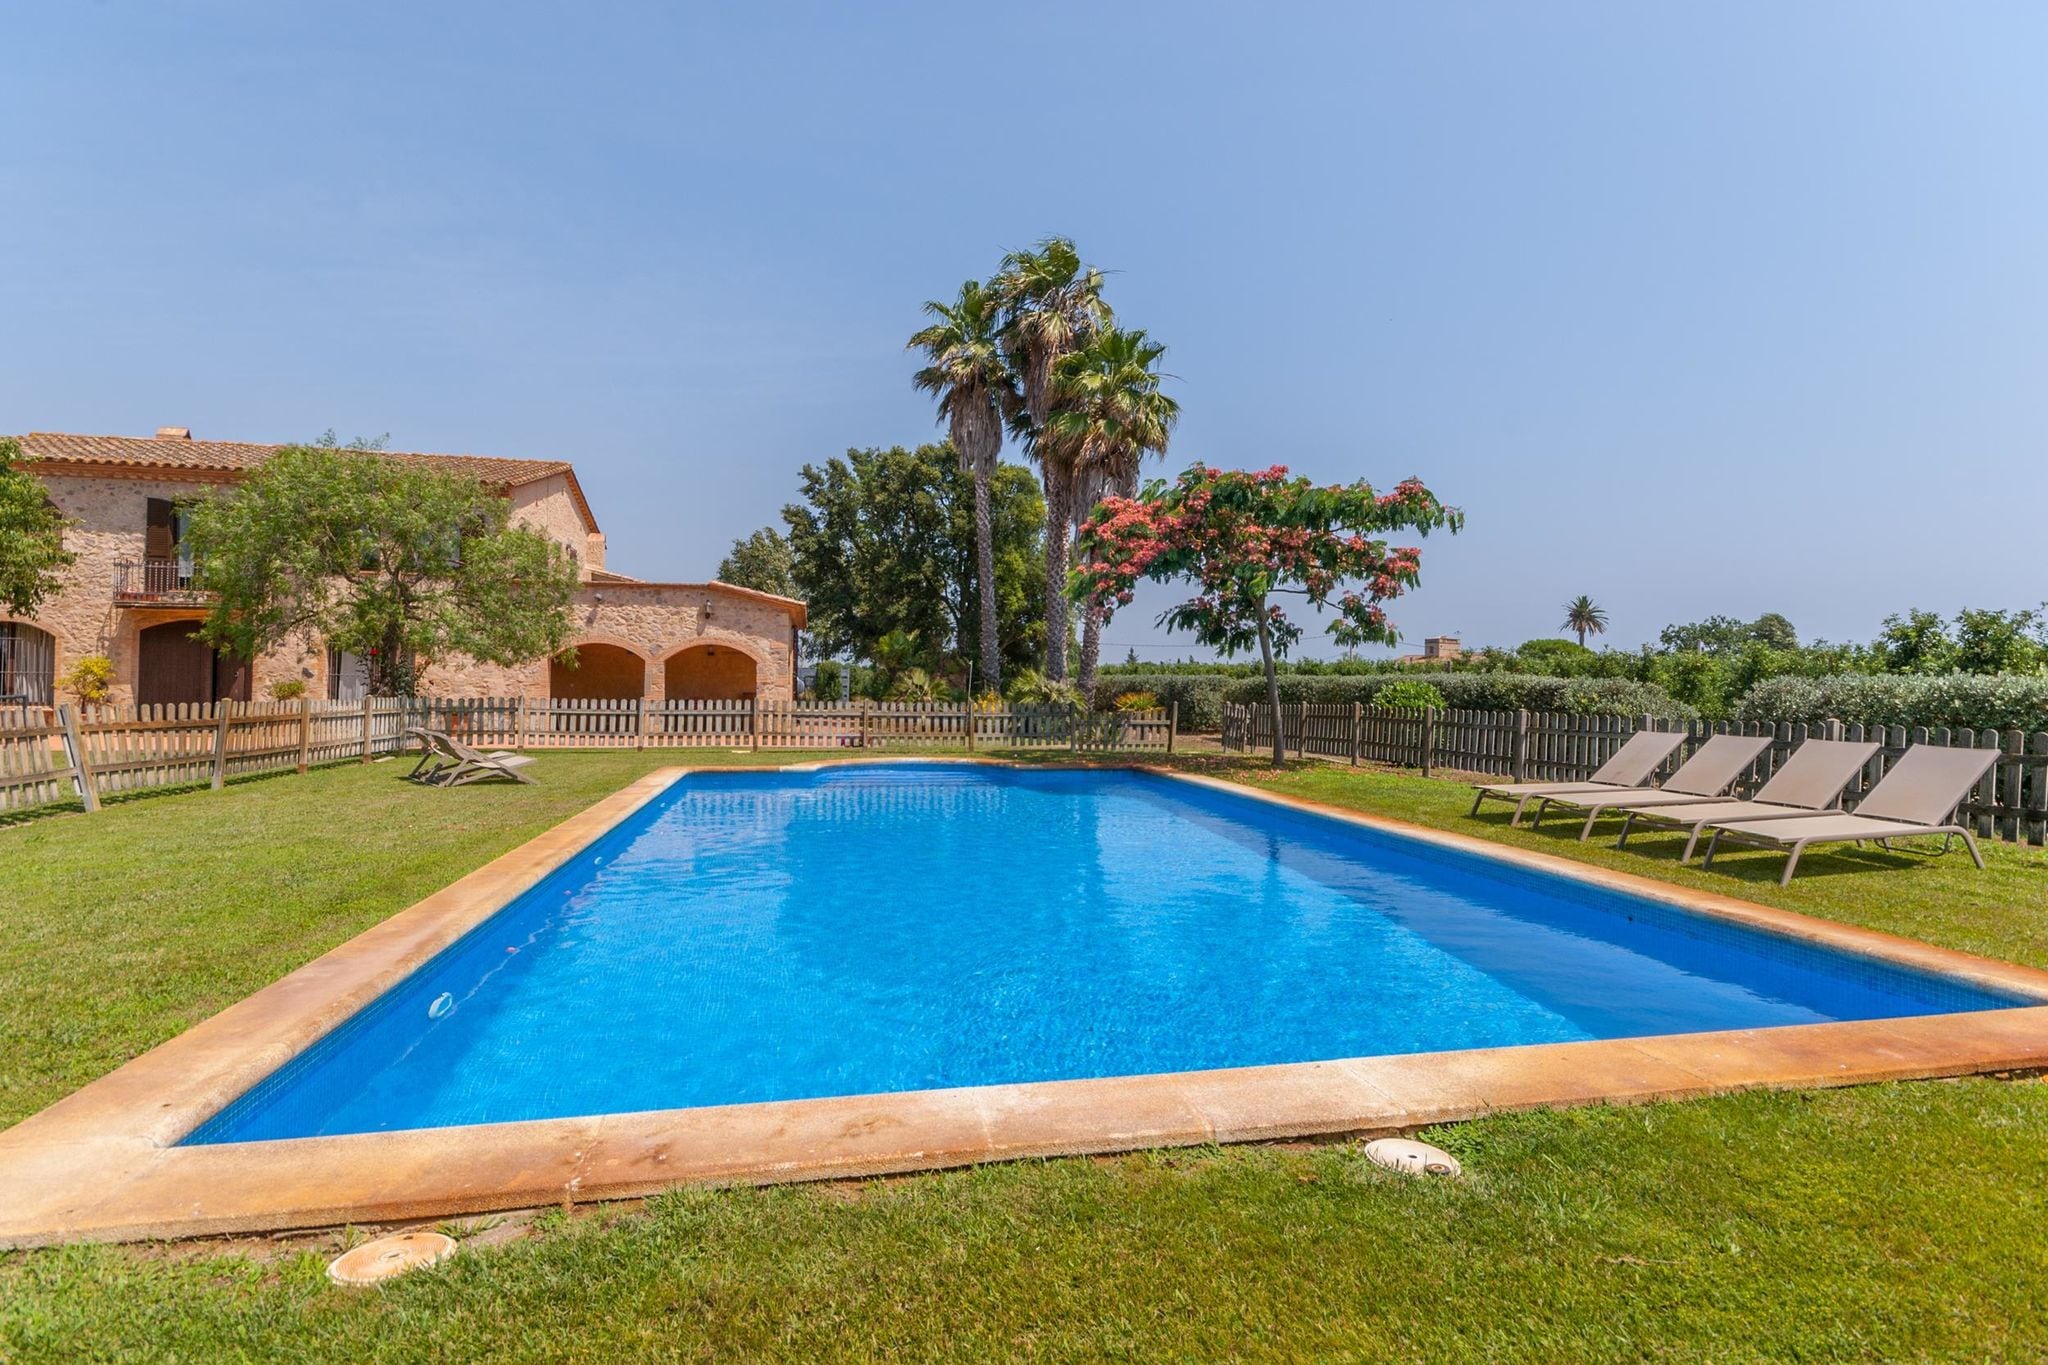 Prachtige Catalaans landhuis met zwembad en grote tuin dicht bij het strand